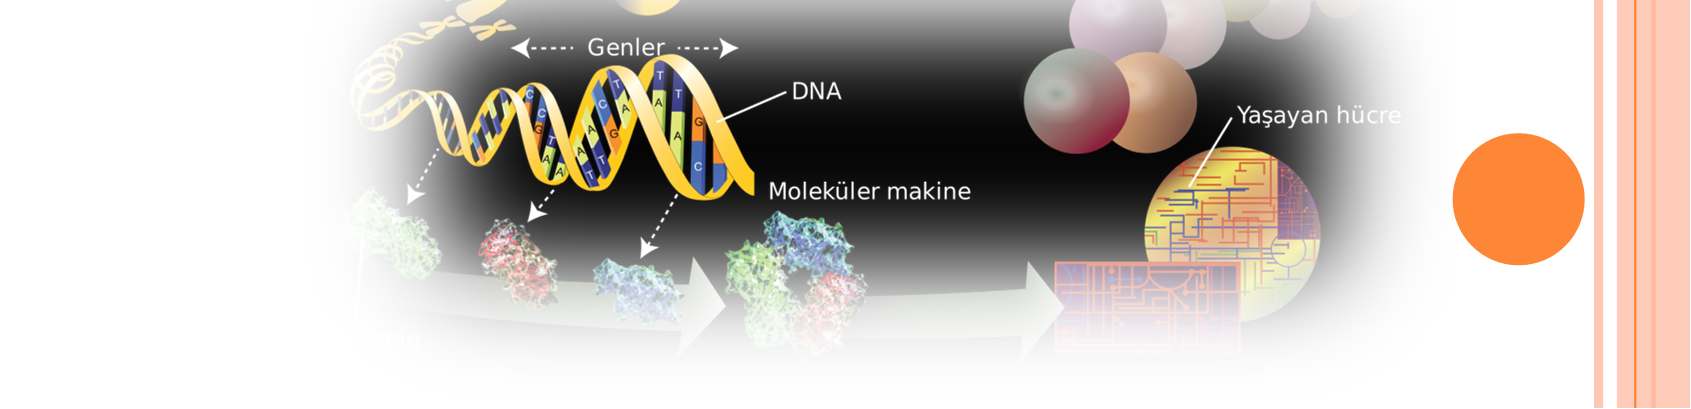 Fener İlkokulu Fener ilkokulu öğrencilerine yönelik DNA izolasyonu yapıldı.